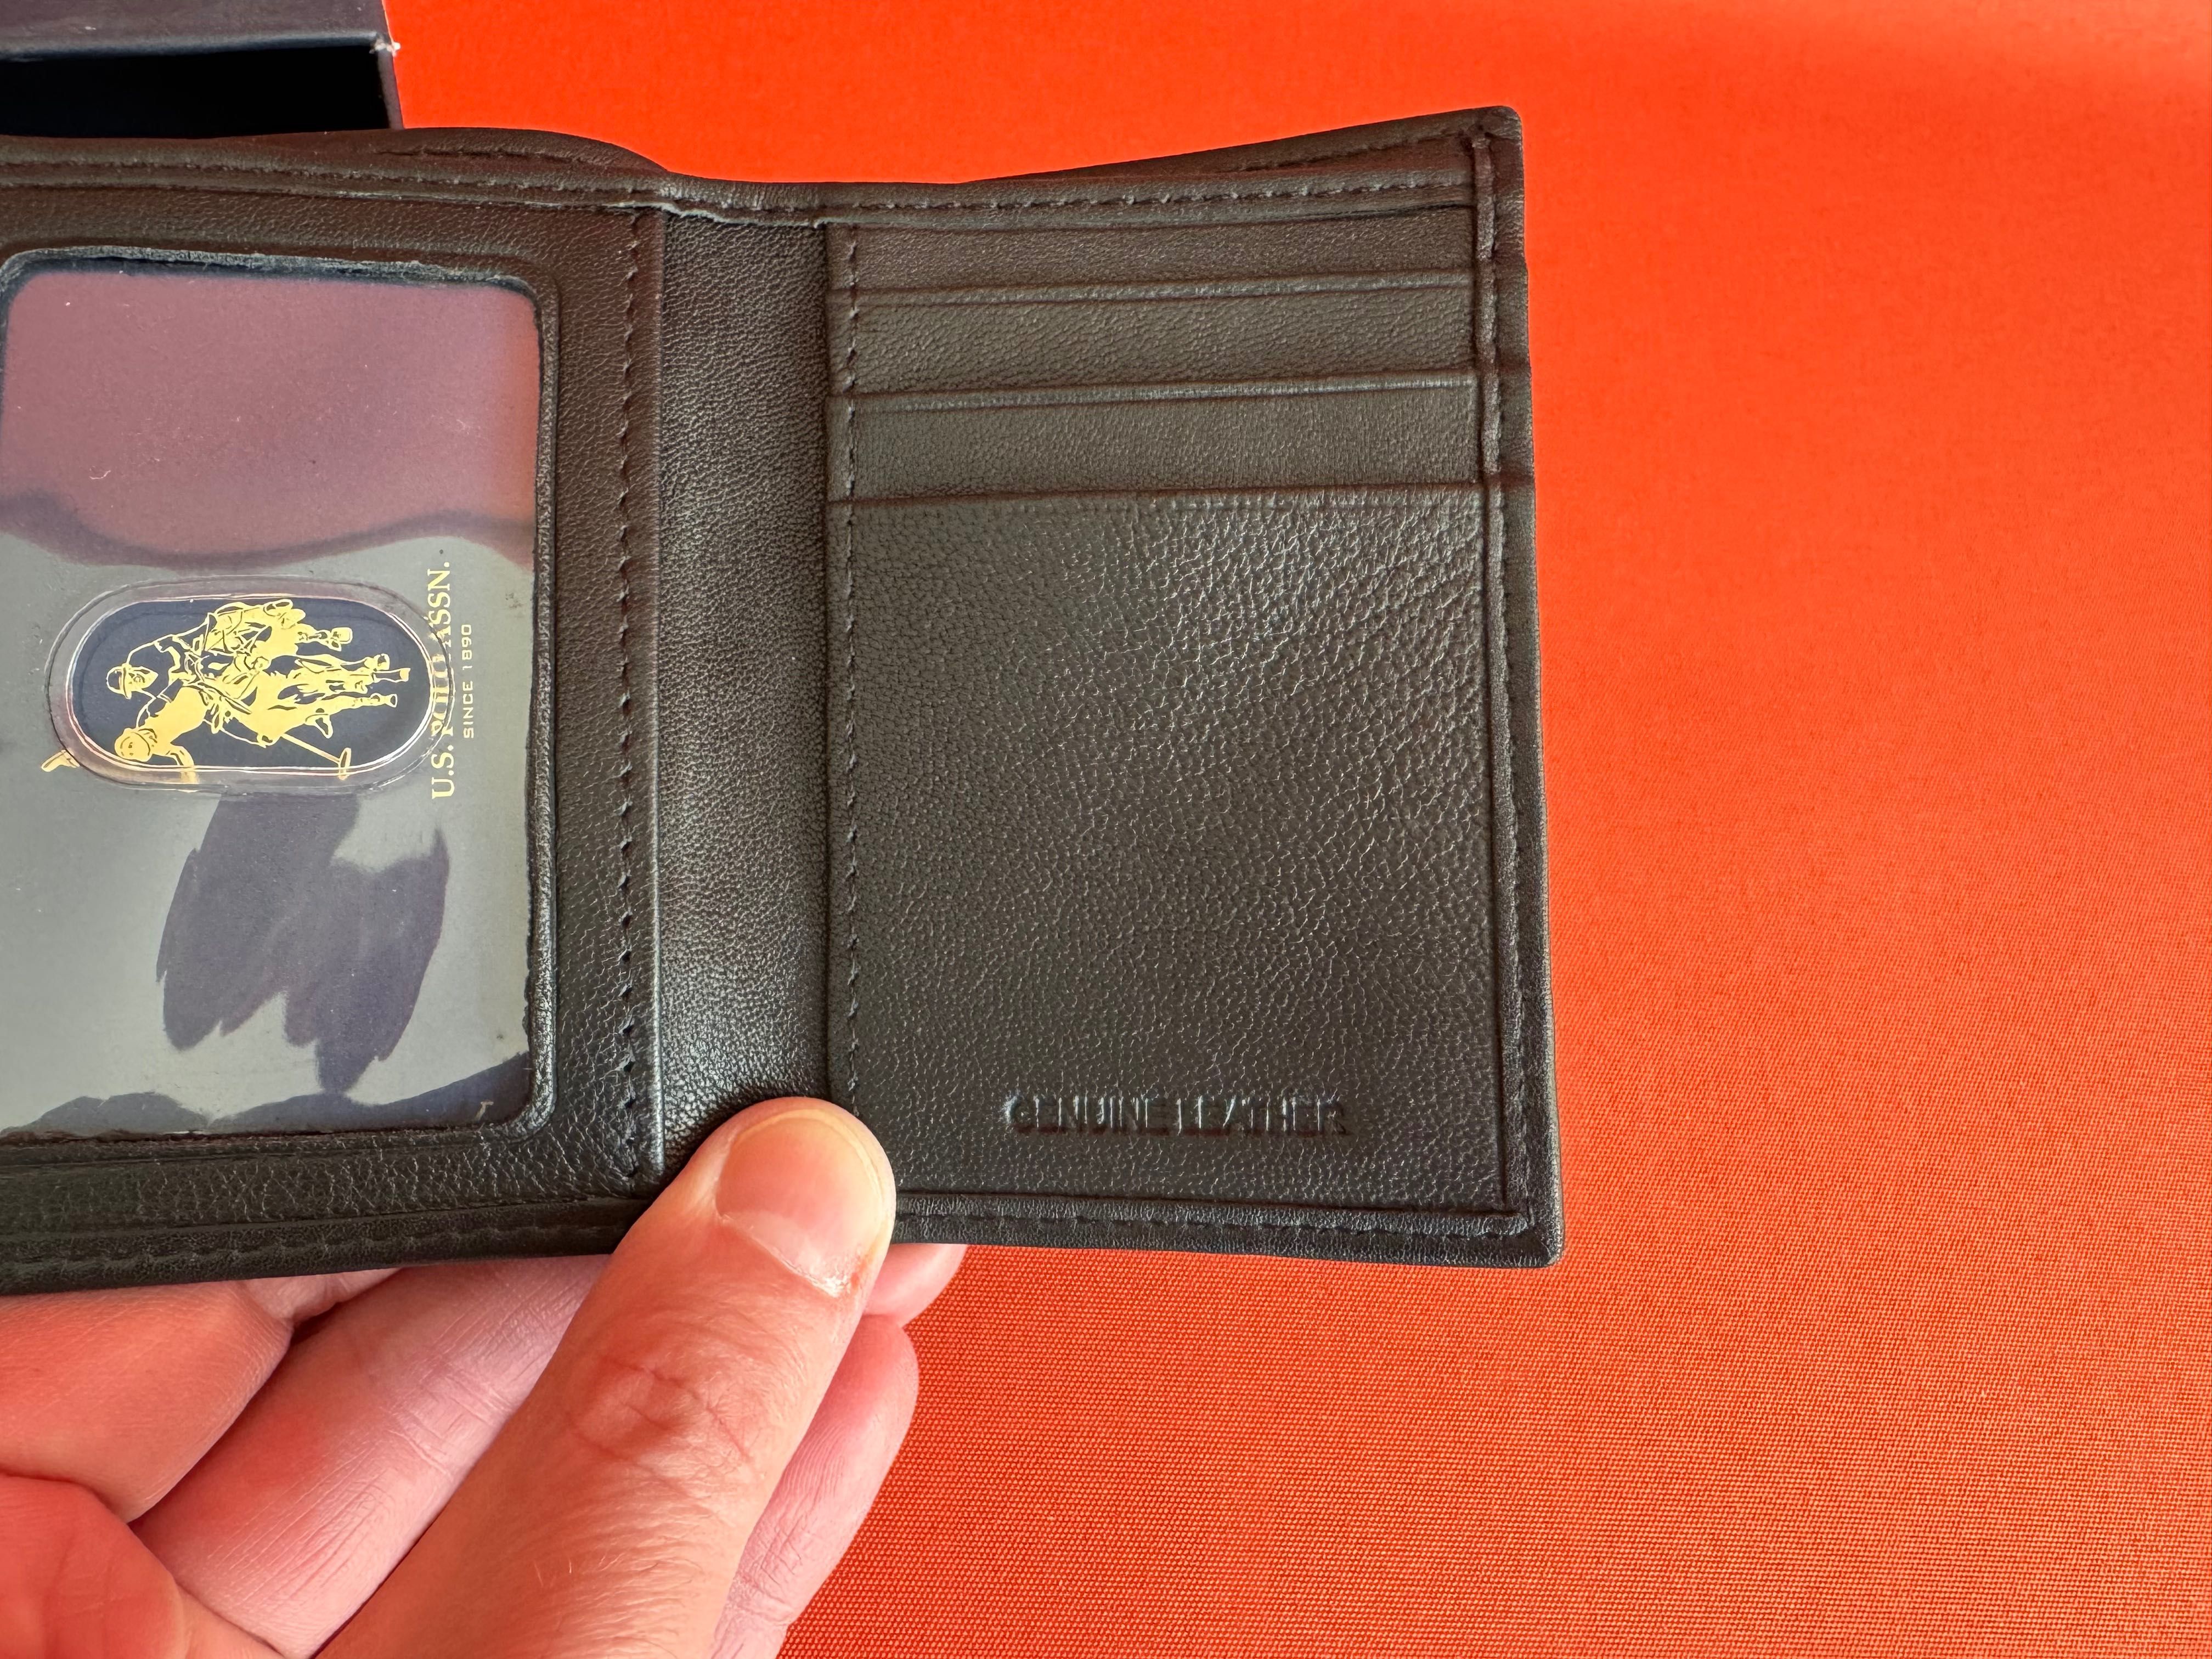 Us. Polo Assn. Оригинал мужской кошелёк гаманець подарочный набор NEW